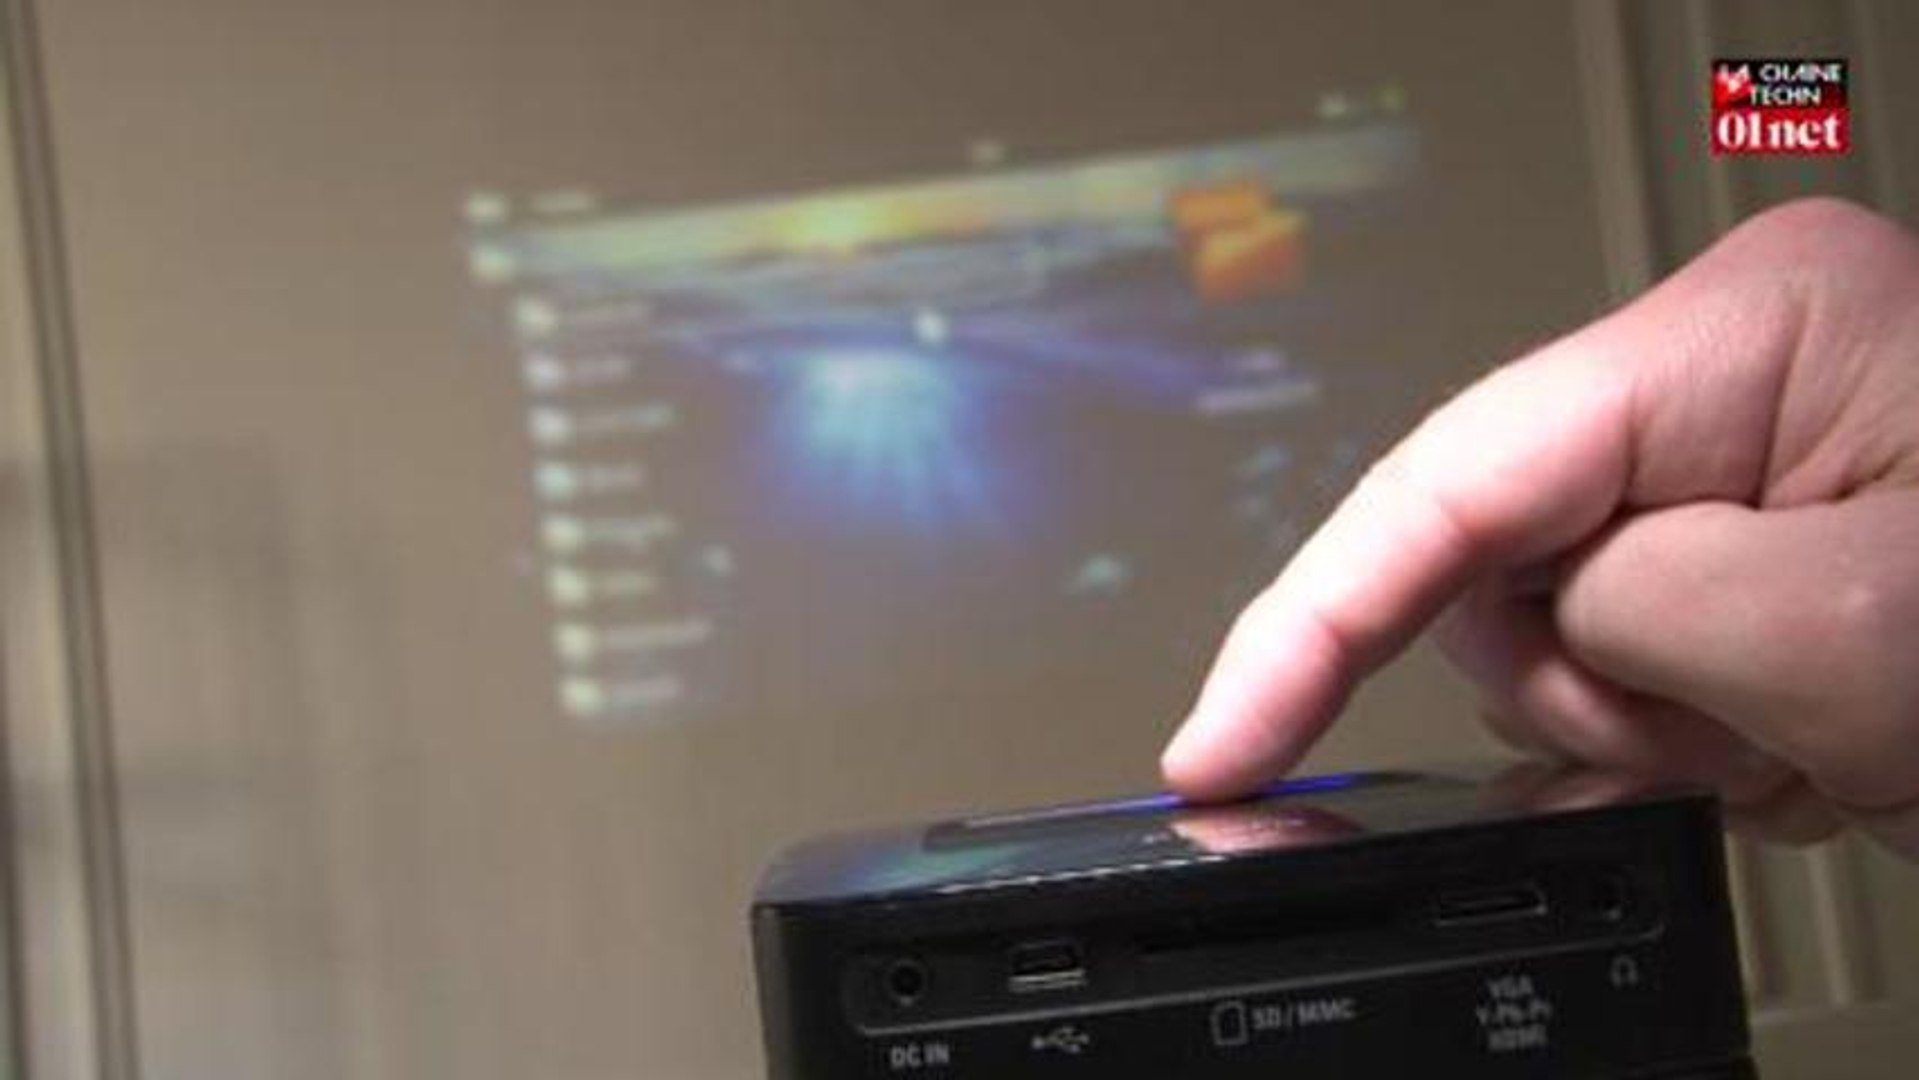 PicoPix 3610 : Un Pico projecteur Wifi sous Android ! - Vidéo Dailymotion